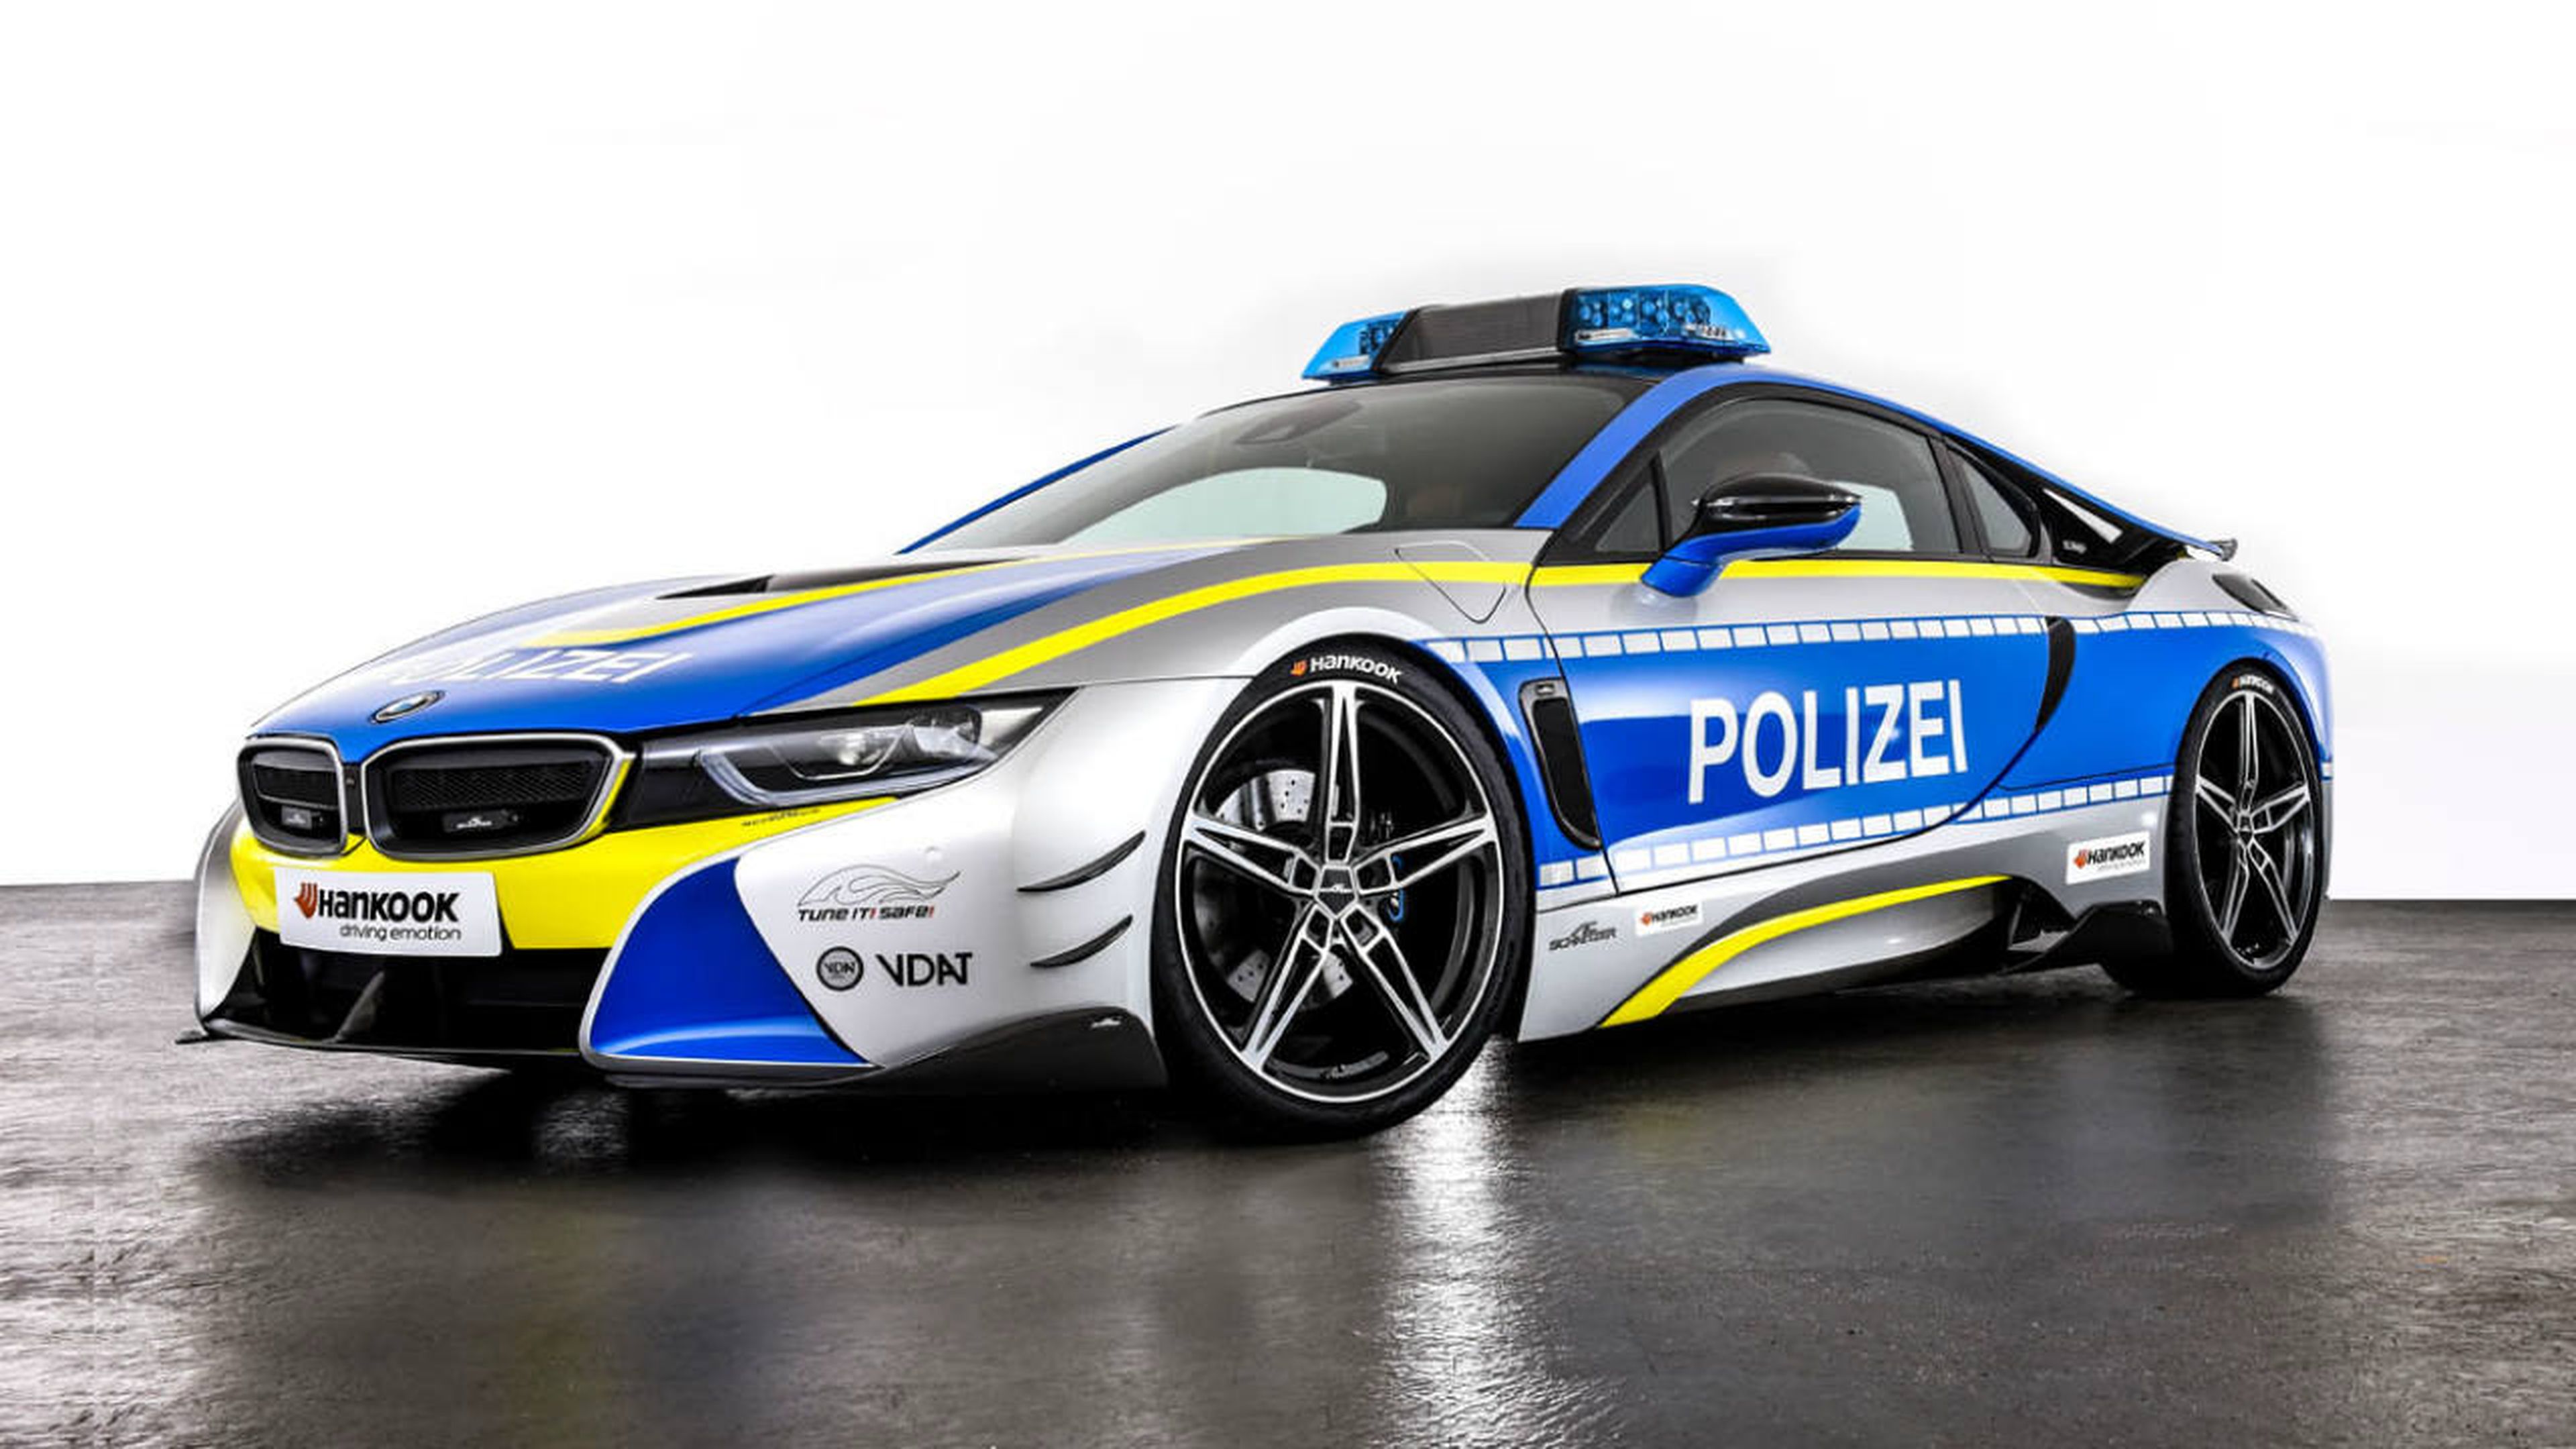 BMW i8 policía Tune It! Safe!